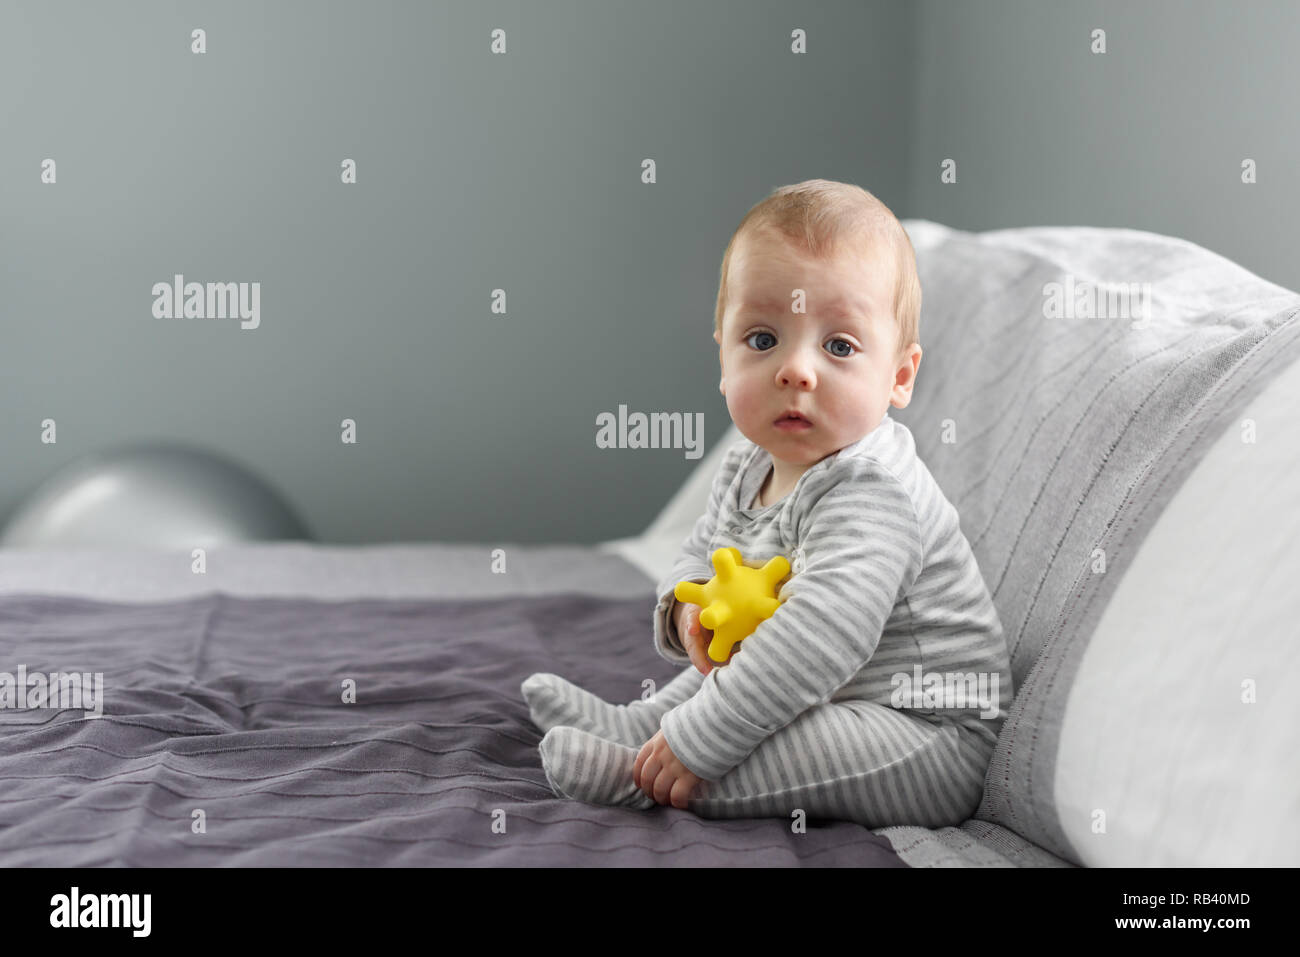 Baby Boy sentado sobre la alfombra de color gris con bola amarilla de juguete. La maternidad y el nuevo concepto de la vida Foto de stock